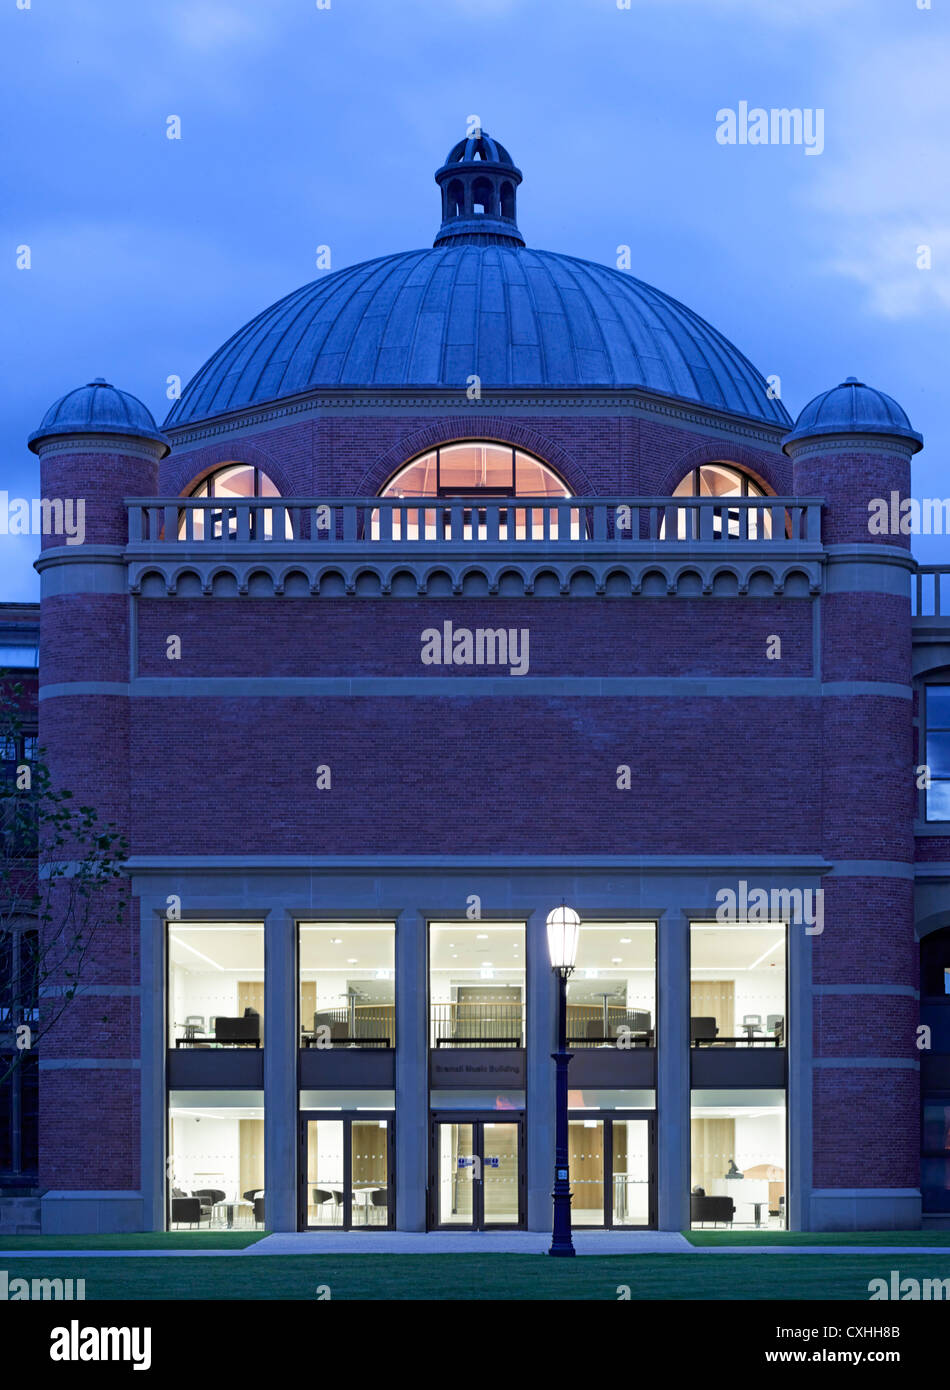 Bramall Musik-Gebäude, Universität von Birmingham, Birmingham, Vereinigtes Königreich. Architekt: Glenn Howells Architects, 2012. Insgesamt Stockfoto